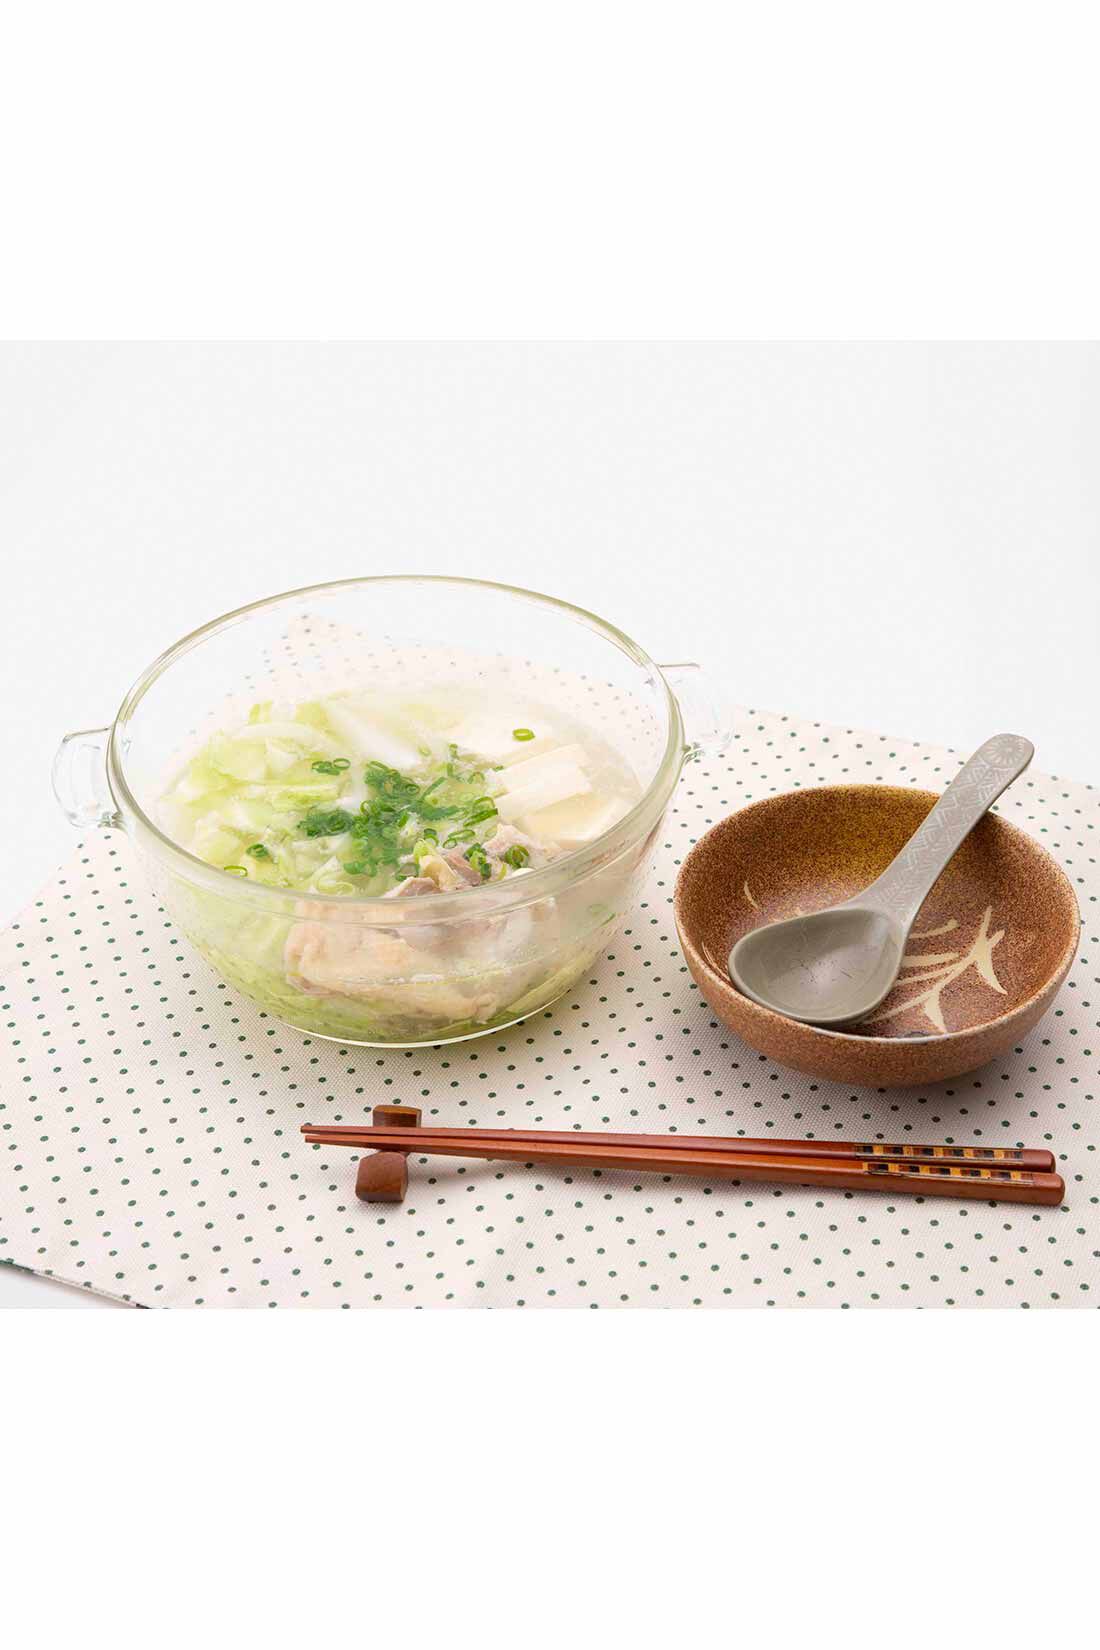 ミニツク| チンするだけおまかせ調理 野菜がたっぷり摂れる耐熱ガラス鍋〈ピンク 1.5L〉